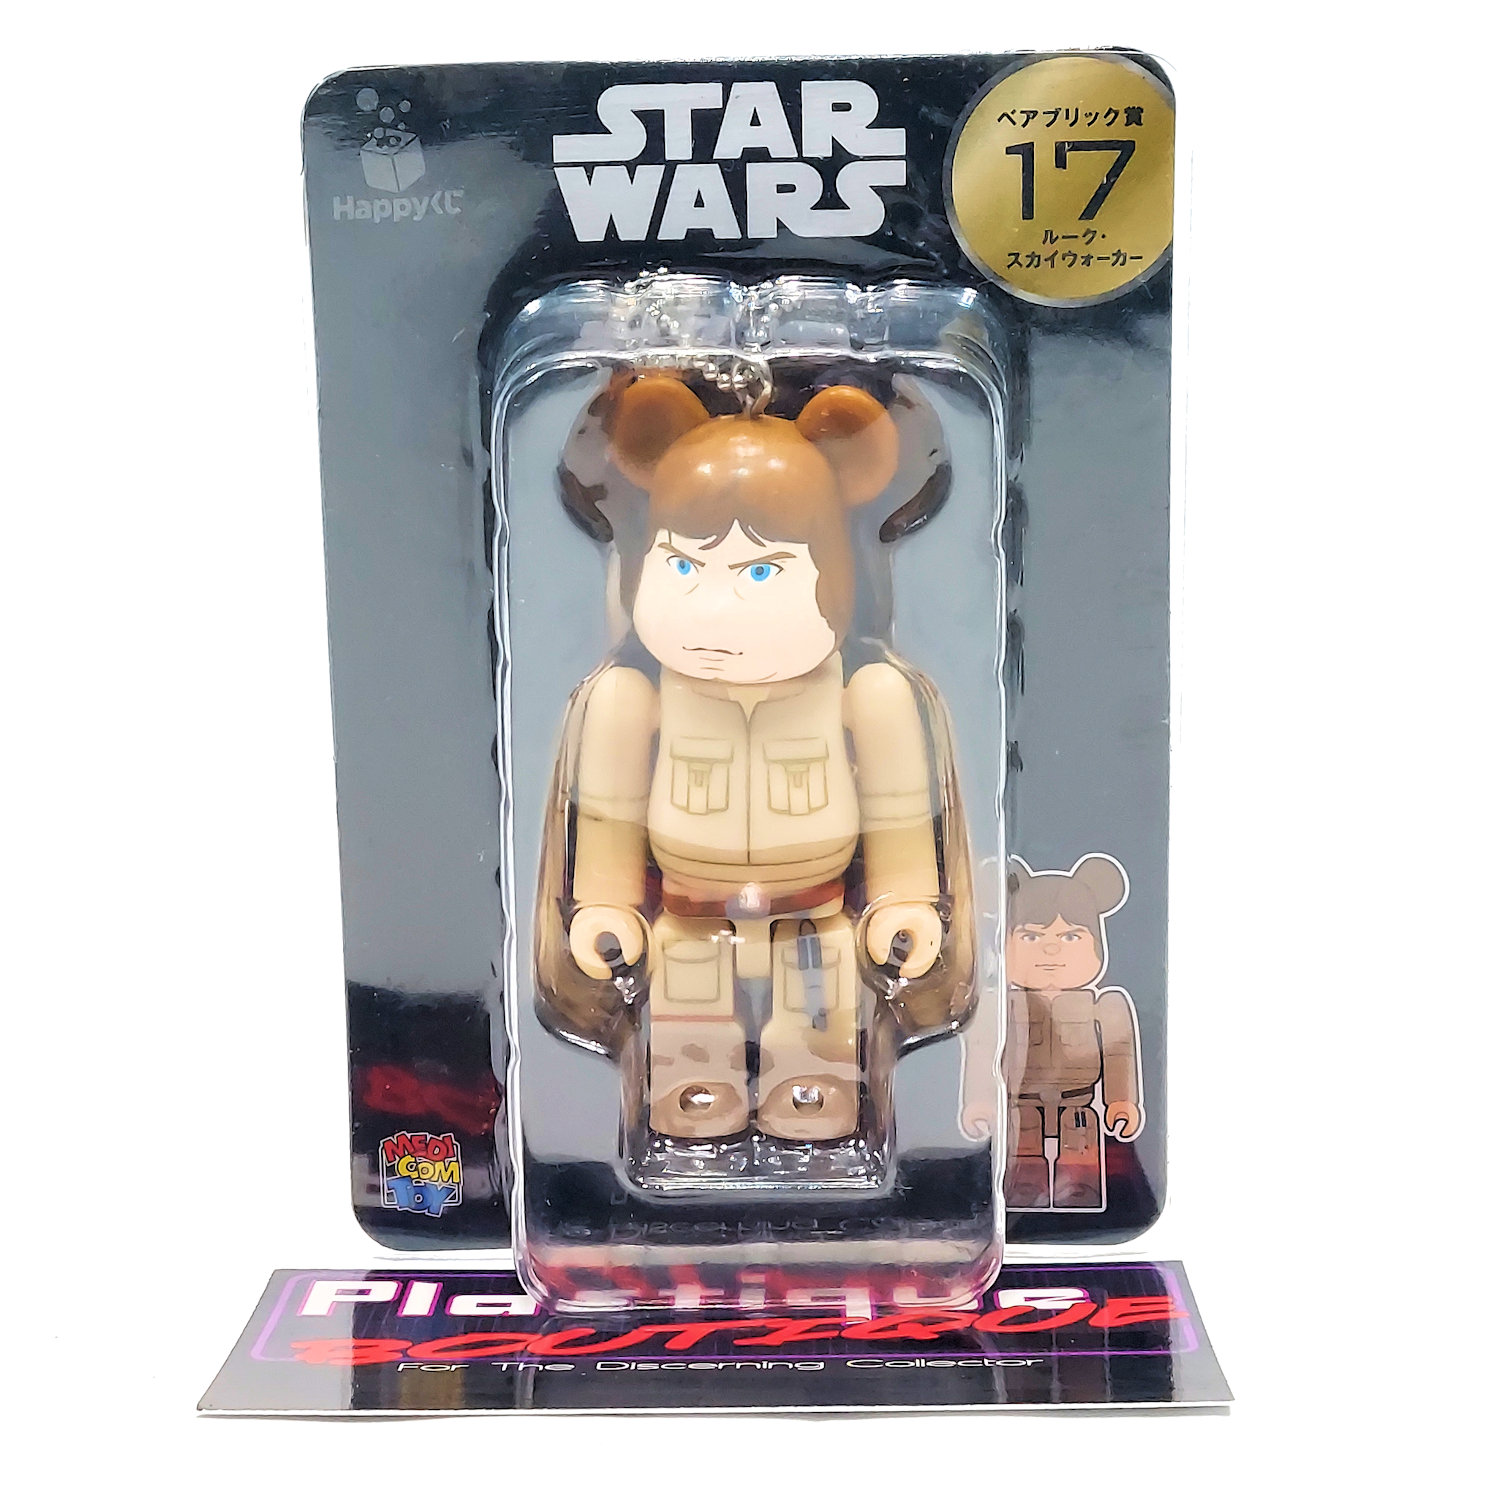  Bearbrick Star Wars Happy Kuji Luke Skywalker #17 OPEN BOX 100% MEDICOM FIGURE 